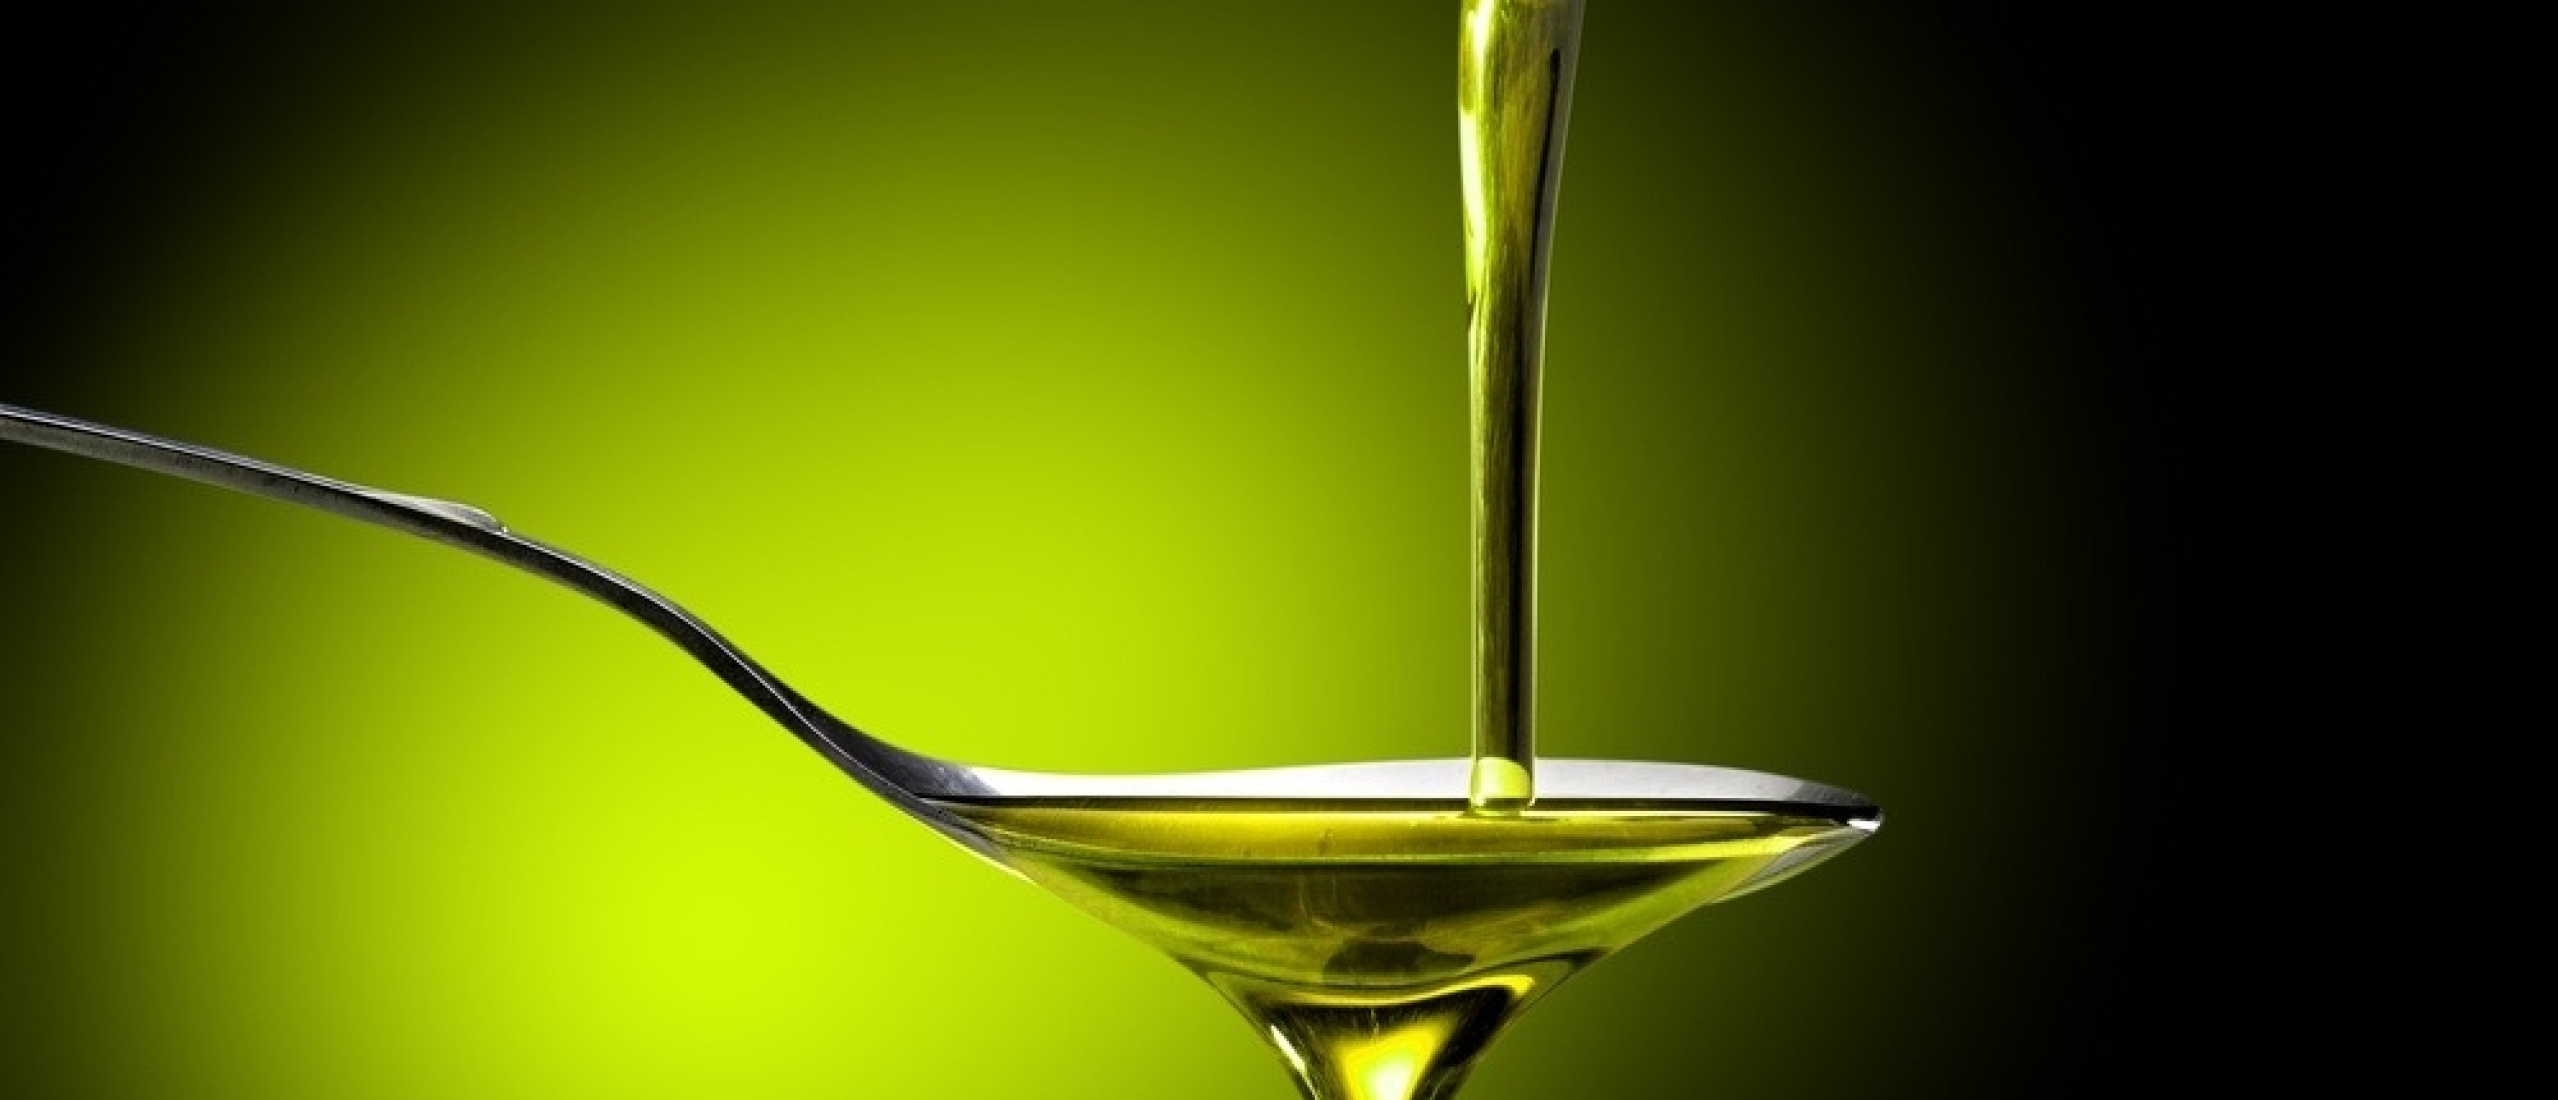 Twee eetlepels extra virgine olijfolie per dag? 🍀